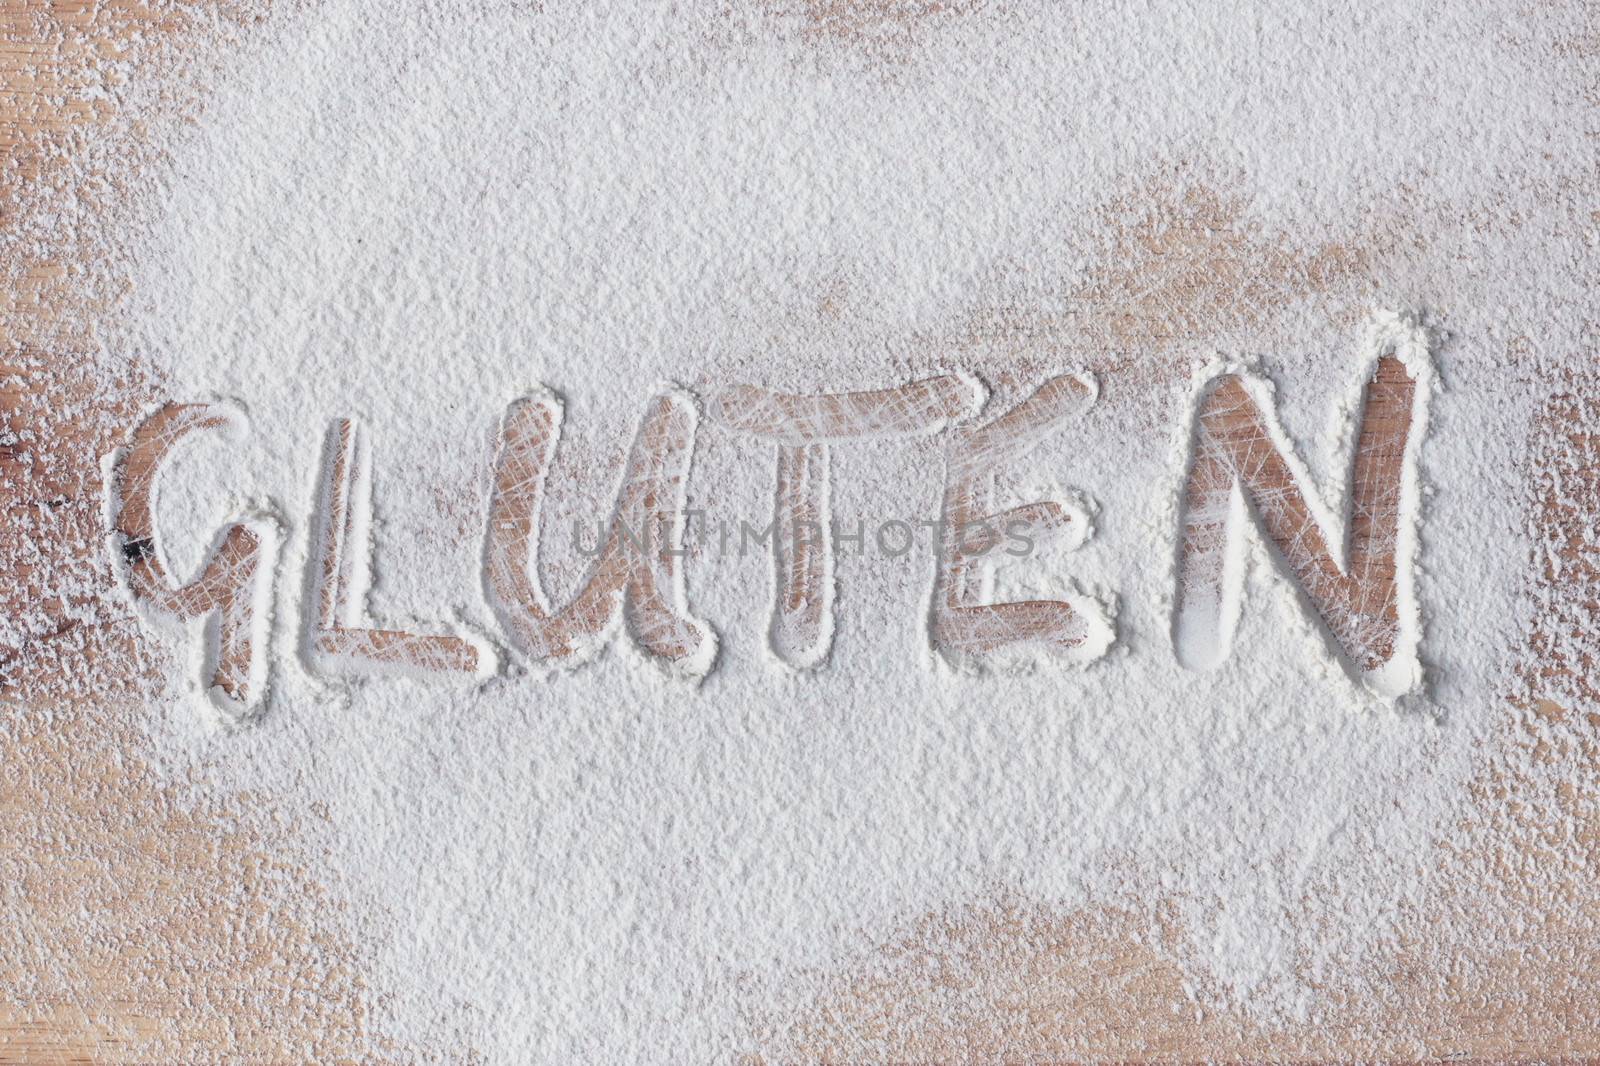 Gluten written in flour on a wooden surface